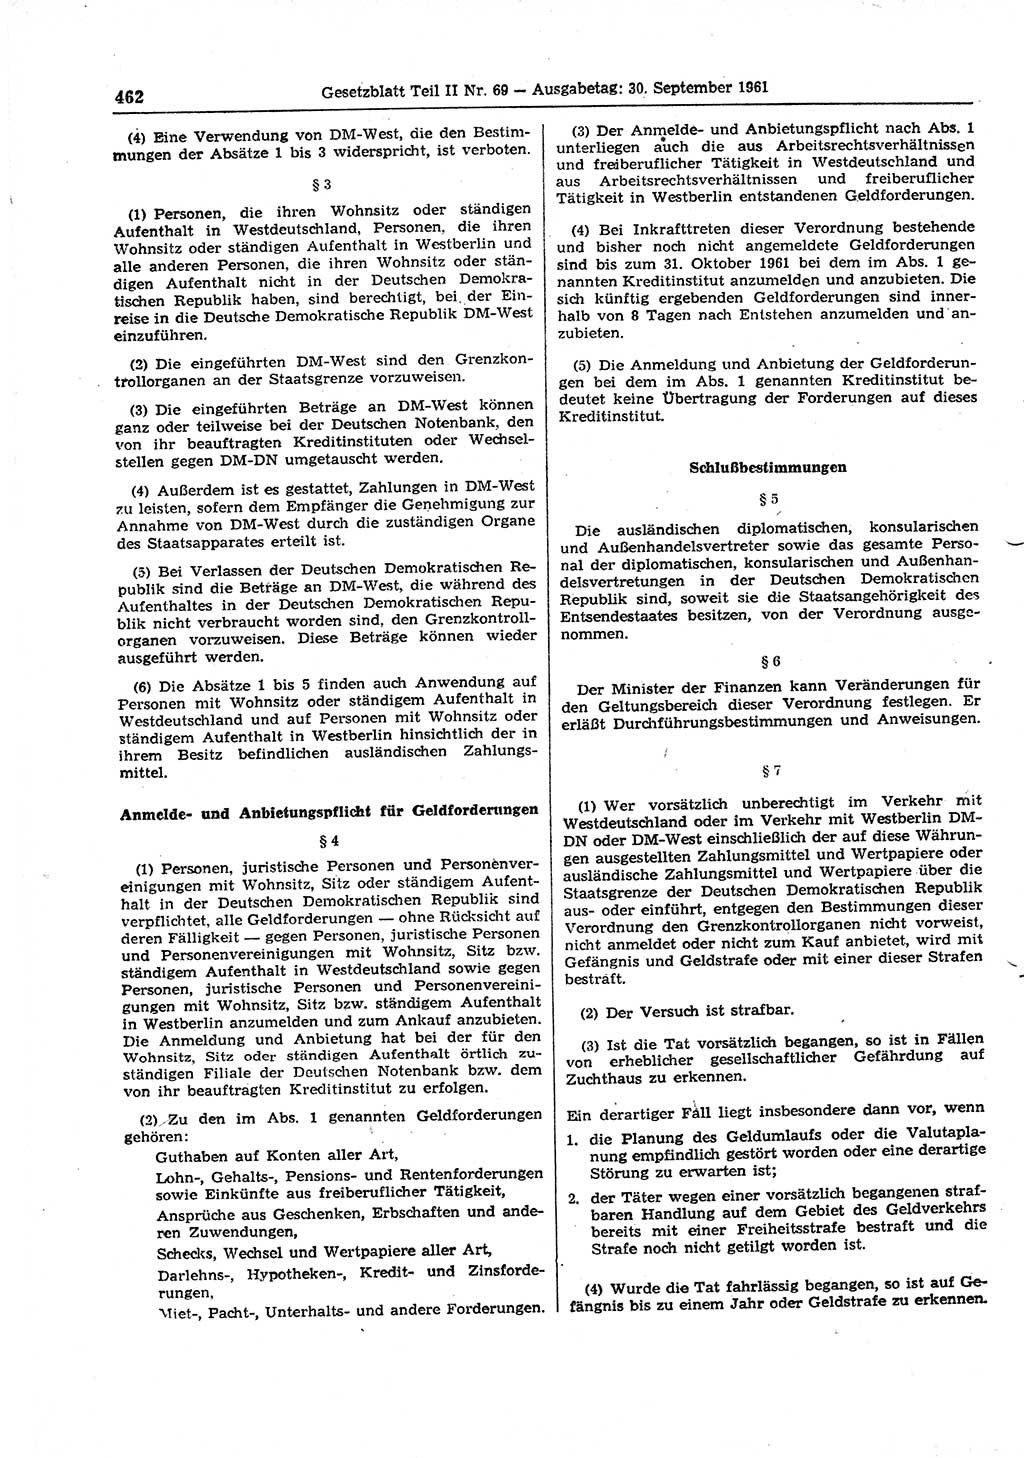 Gesetzblatt (GBl.) der Deutschen Demokratischen Republik (DDR) Teil ⅠⅠ 1961, Seite 462 (GBl. DDR ⅠⅠ 1961, S. 462)